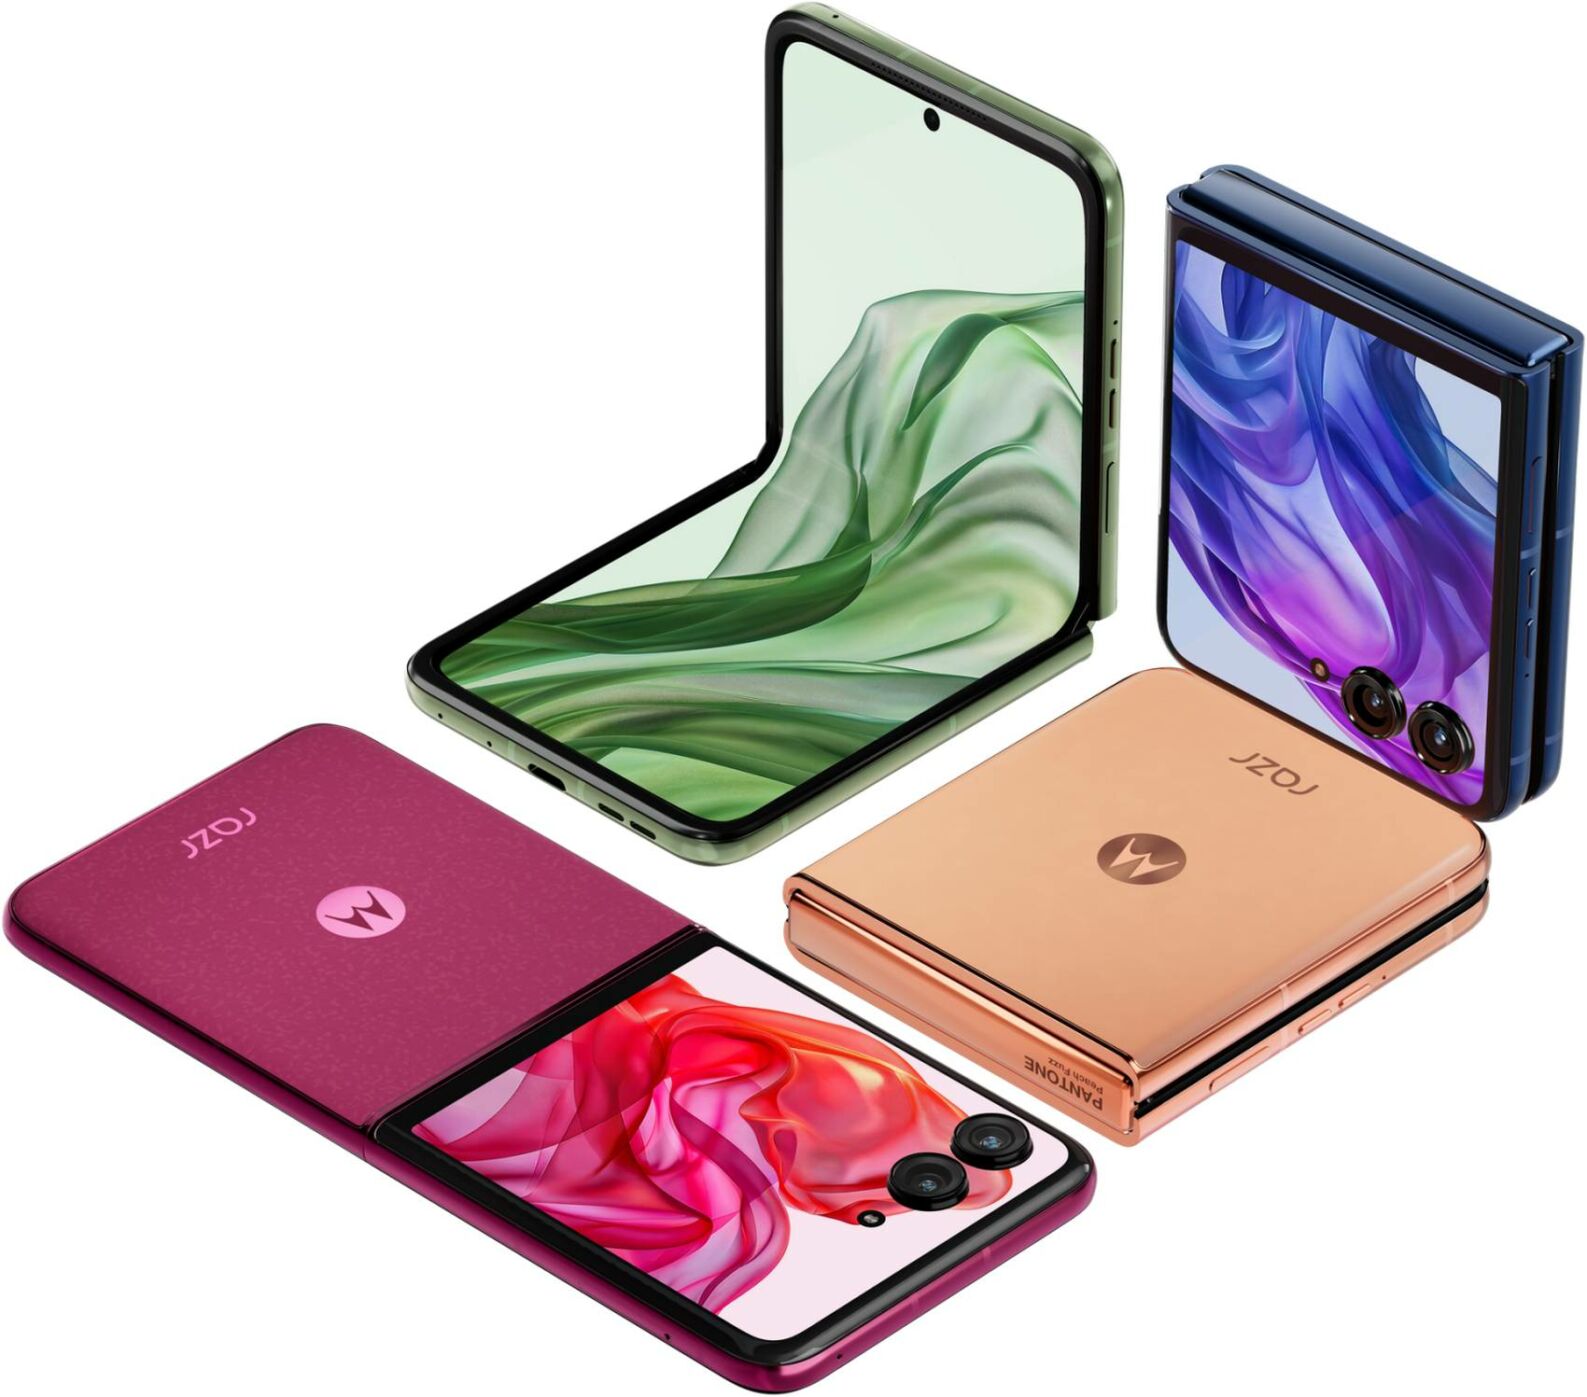 New Motorola Razr Flip phone Family unveiled (7)